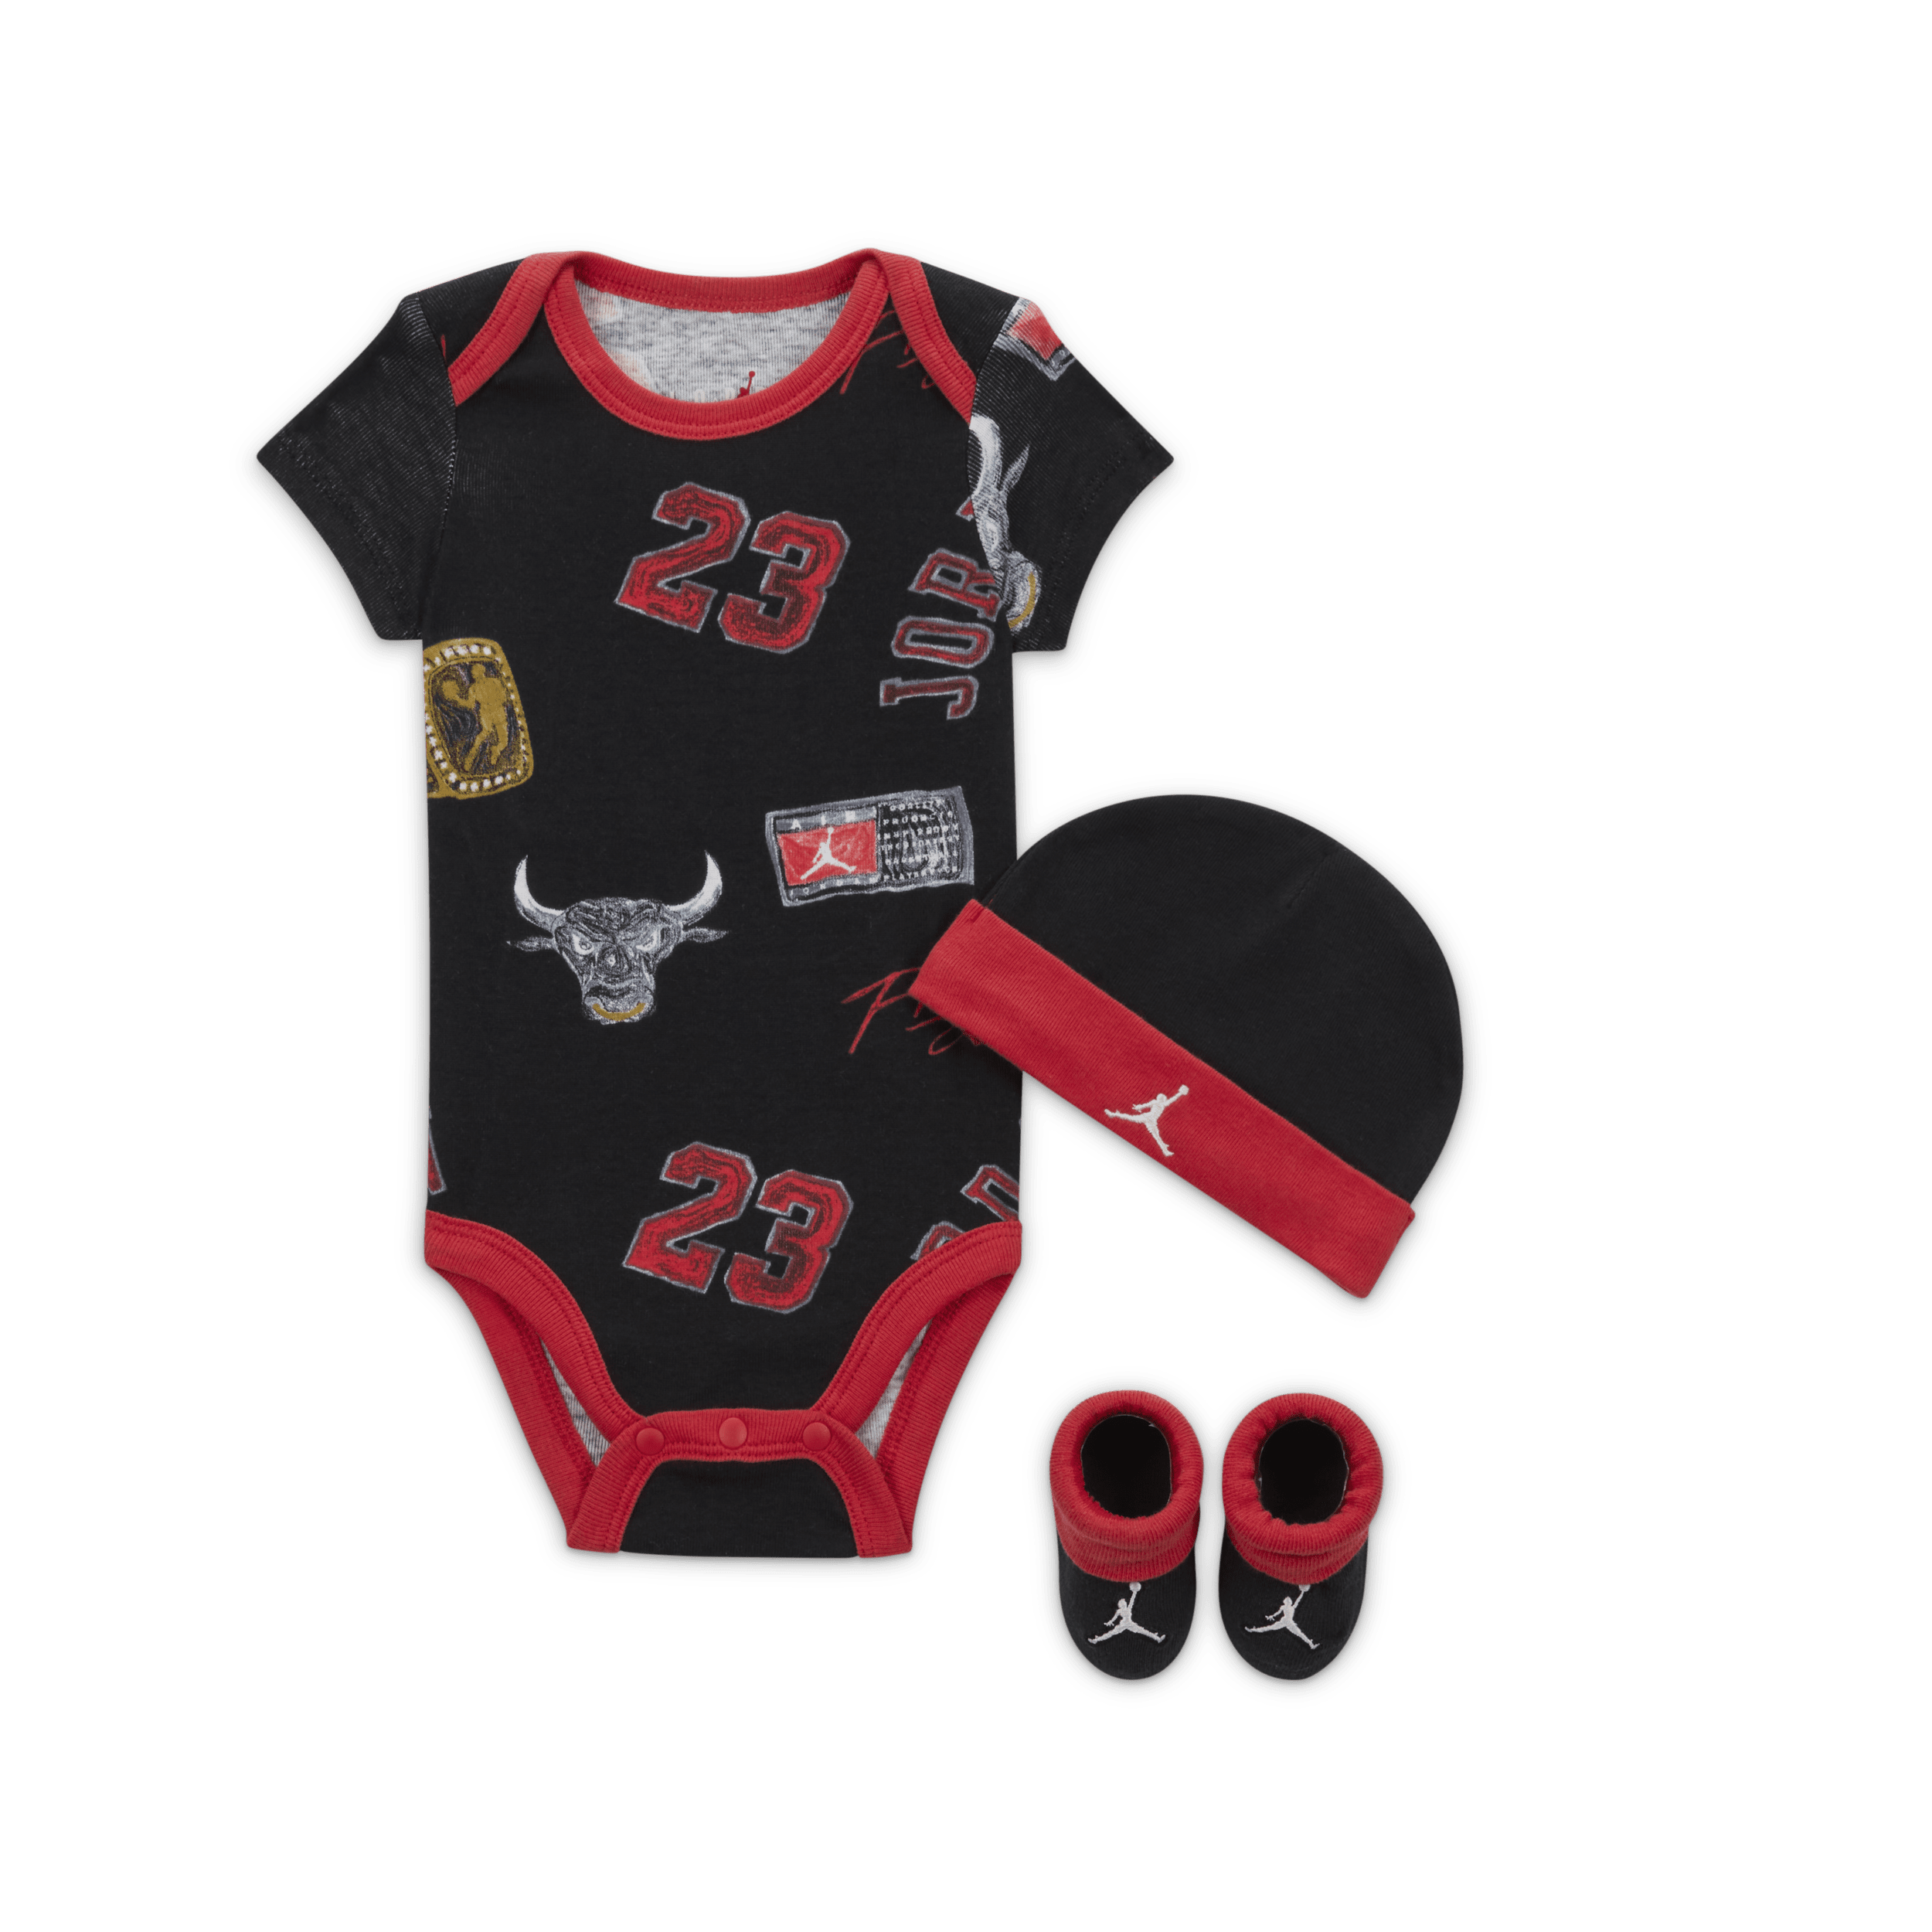 Jordan MJ Essentials driedelige babyset met print Zwart